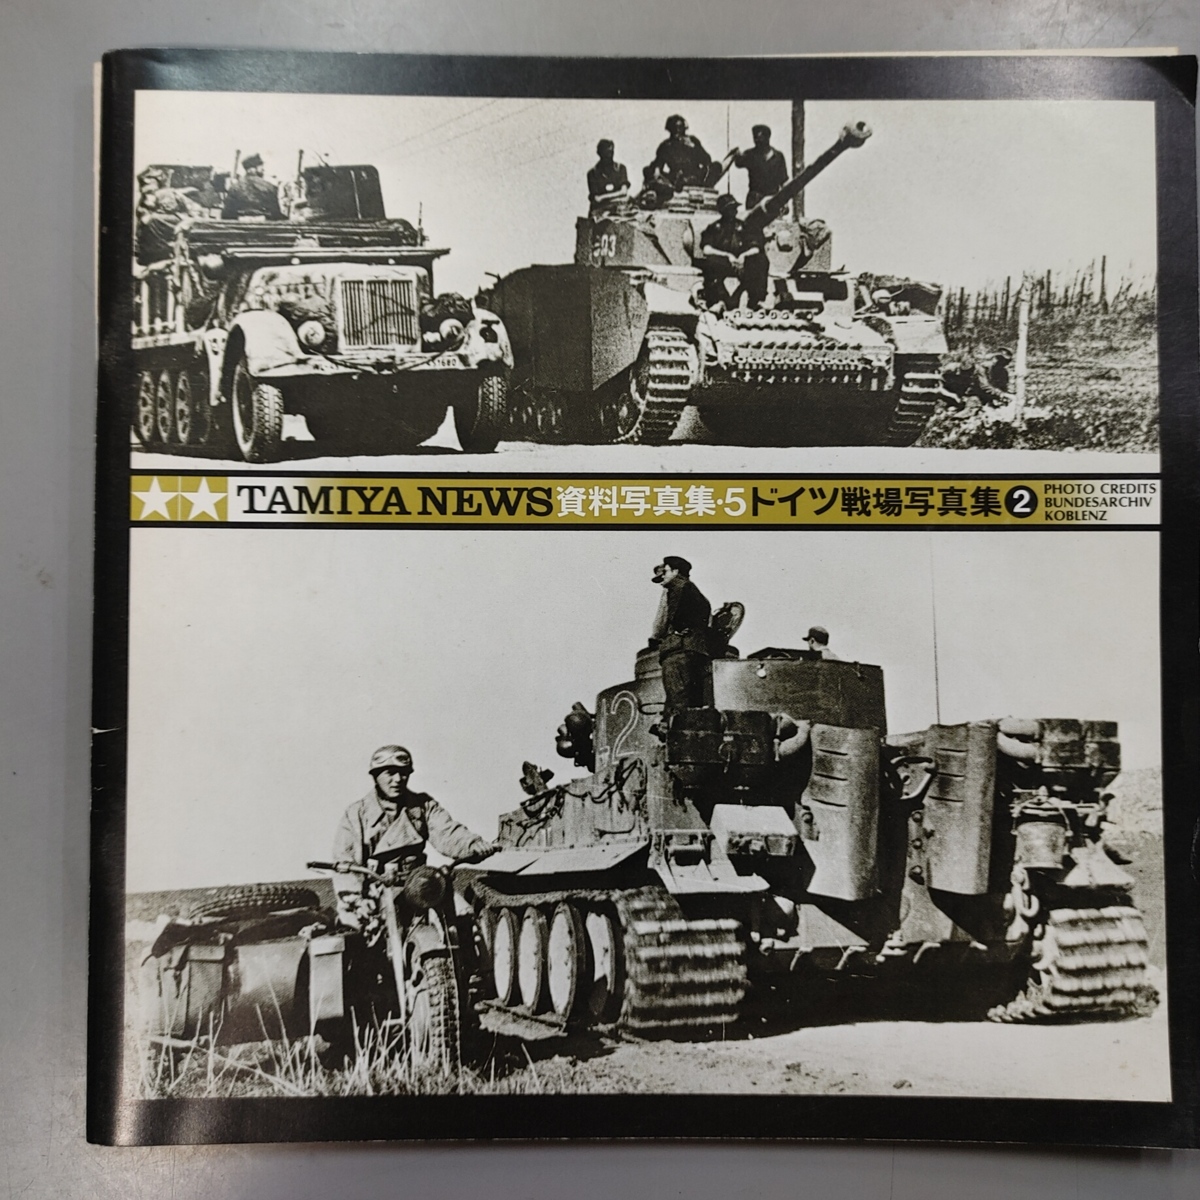 Tamiya News タミヤニュース資料写真集5 ドイツ戦車戦場写真集2 日本代购 买对网